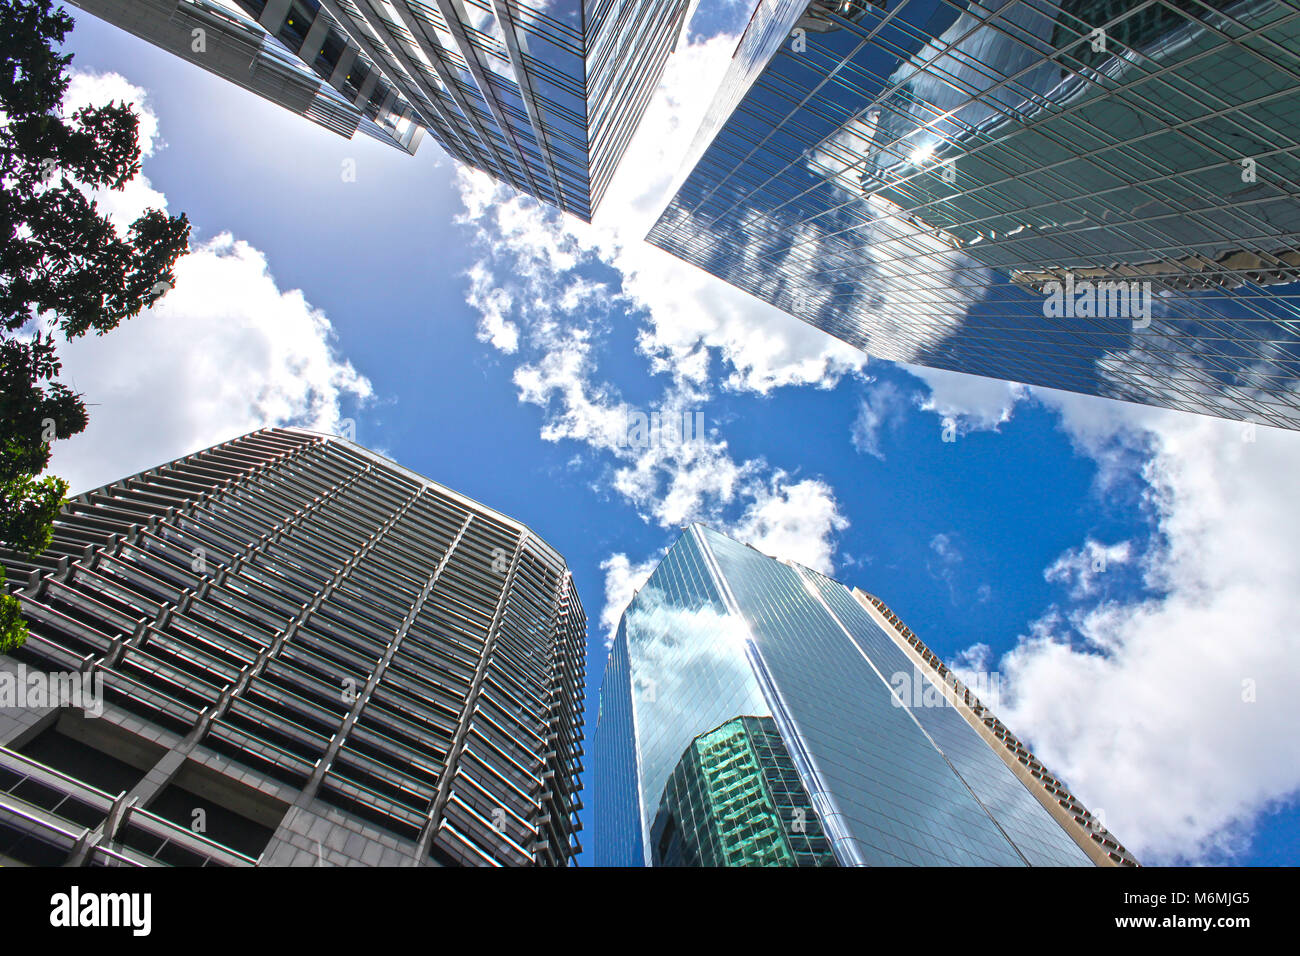 Anzeigen, die auf der blauen bewölkten Himmel durch Wolkenkratzer spiegelt Wolken und anderen Gebäuden in CBD Brisbane Queensland Australien Stockfoto